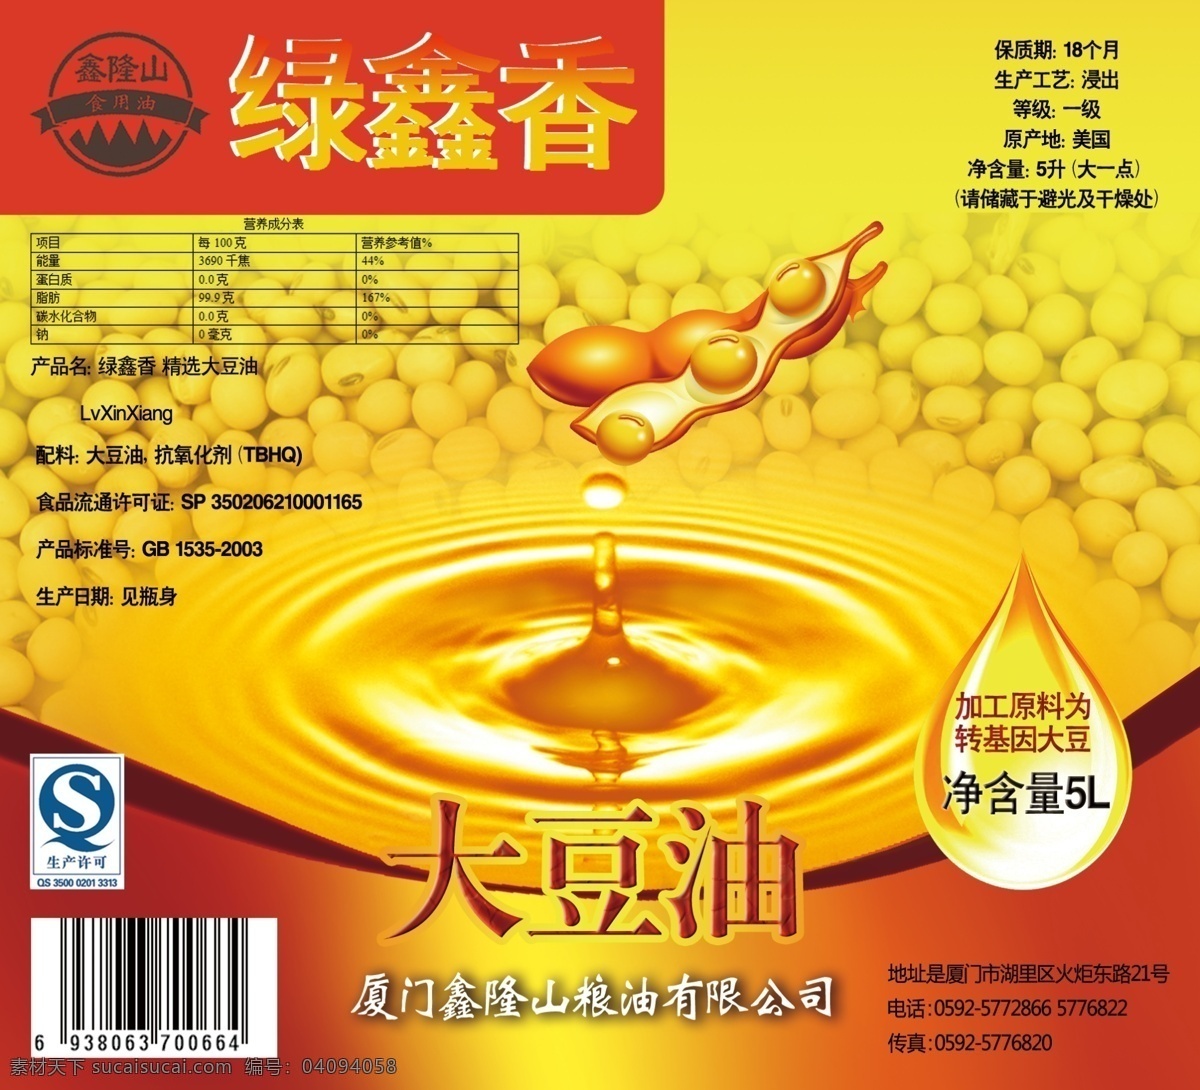 食用油标签 标签 食用油 包装标签 大豆油 广告设计模板 包装设计 源文件